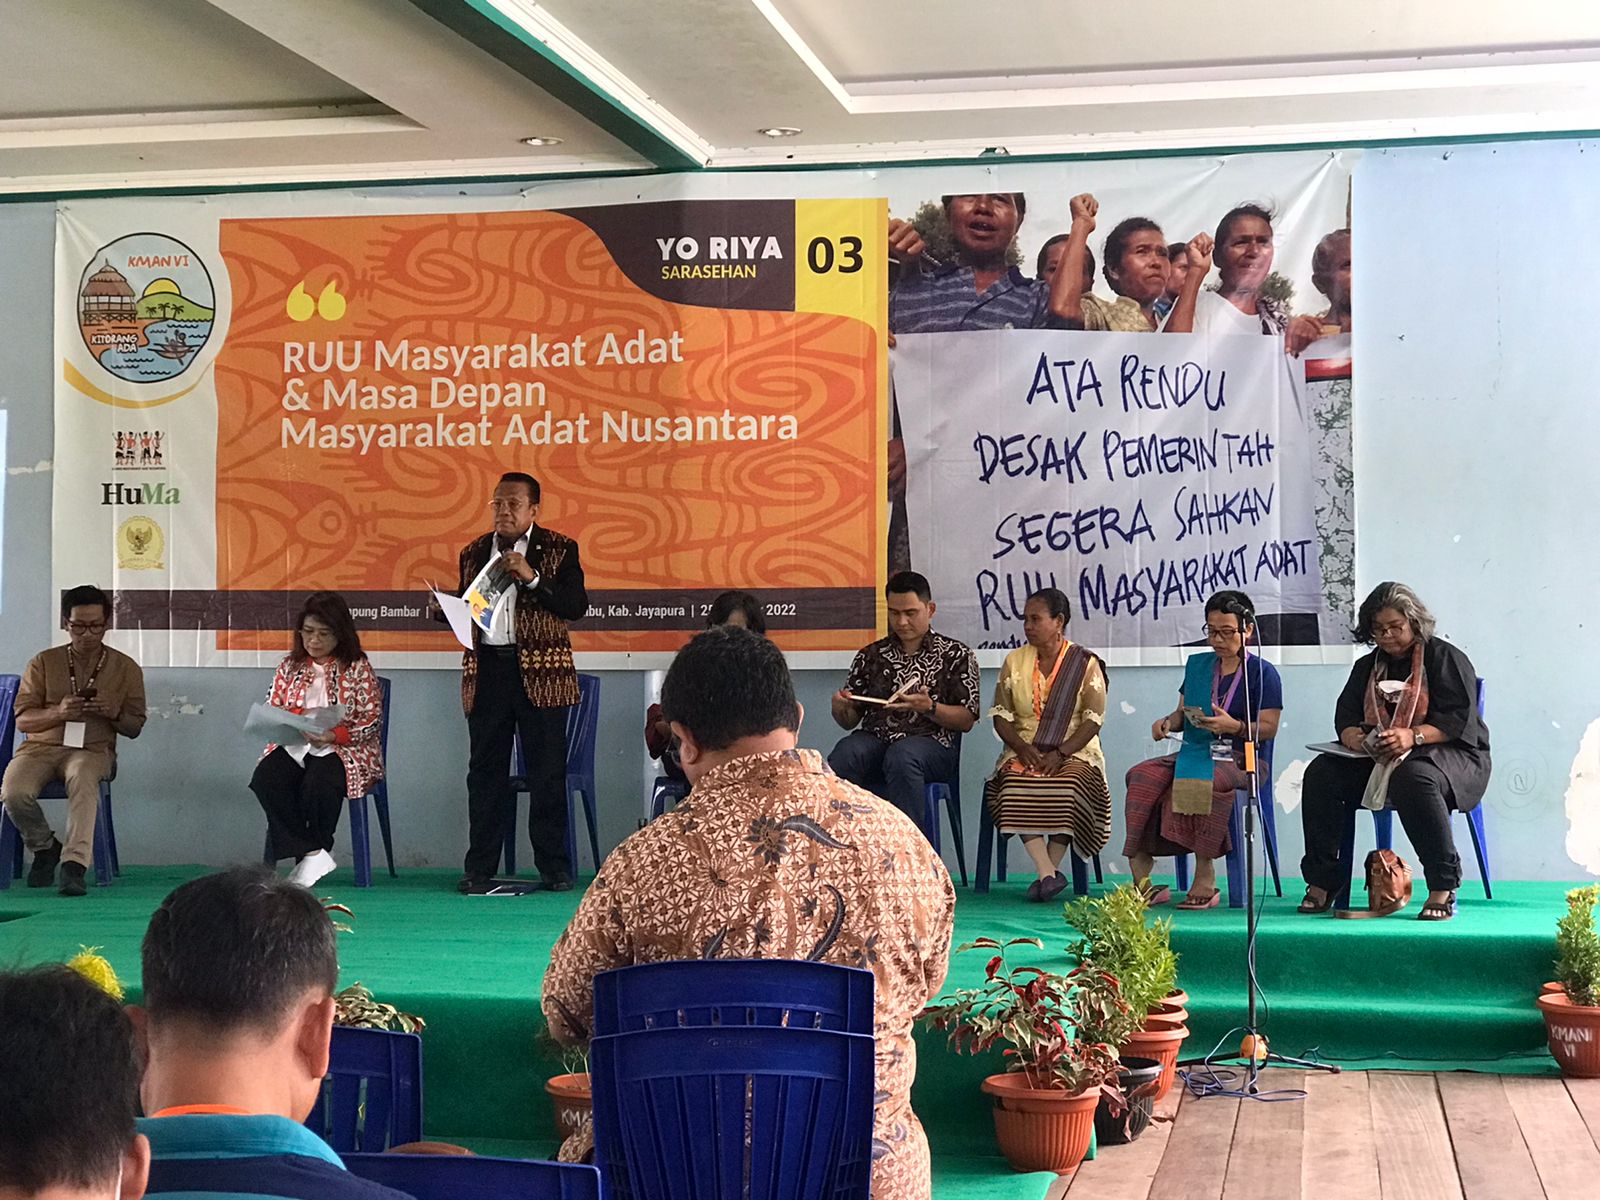 Suasana Ro Riya atau sarasehan bertema "RUU Masyarakat Adat dan Masa Depan Masyarakat Adat Nusantara" di Kampung Bambar, Distrik Waibu, Kabupaten Jayapura, Papua pada Selasa, (25/10/2022).